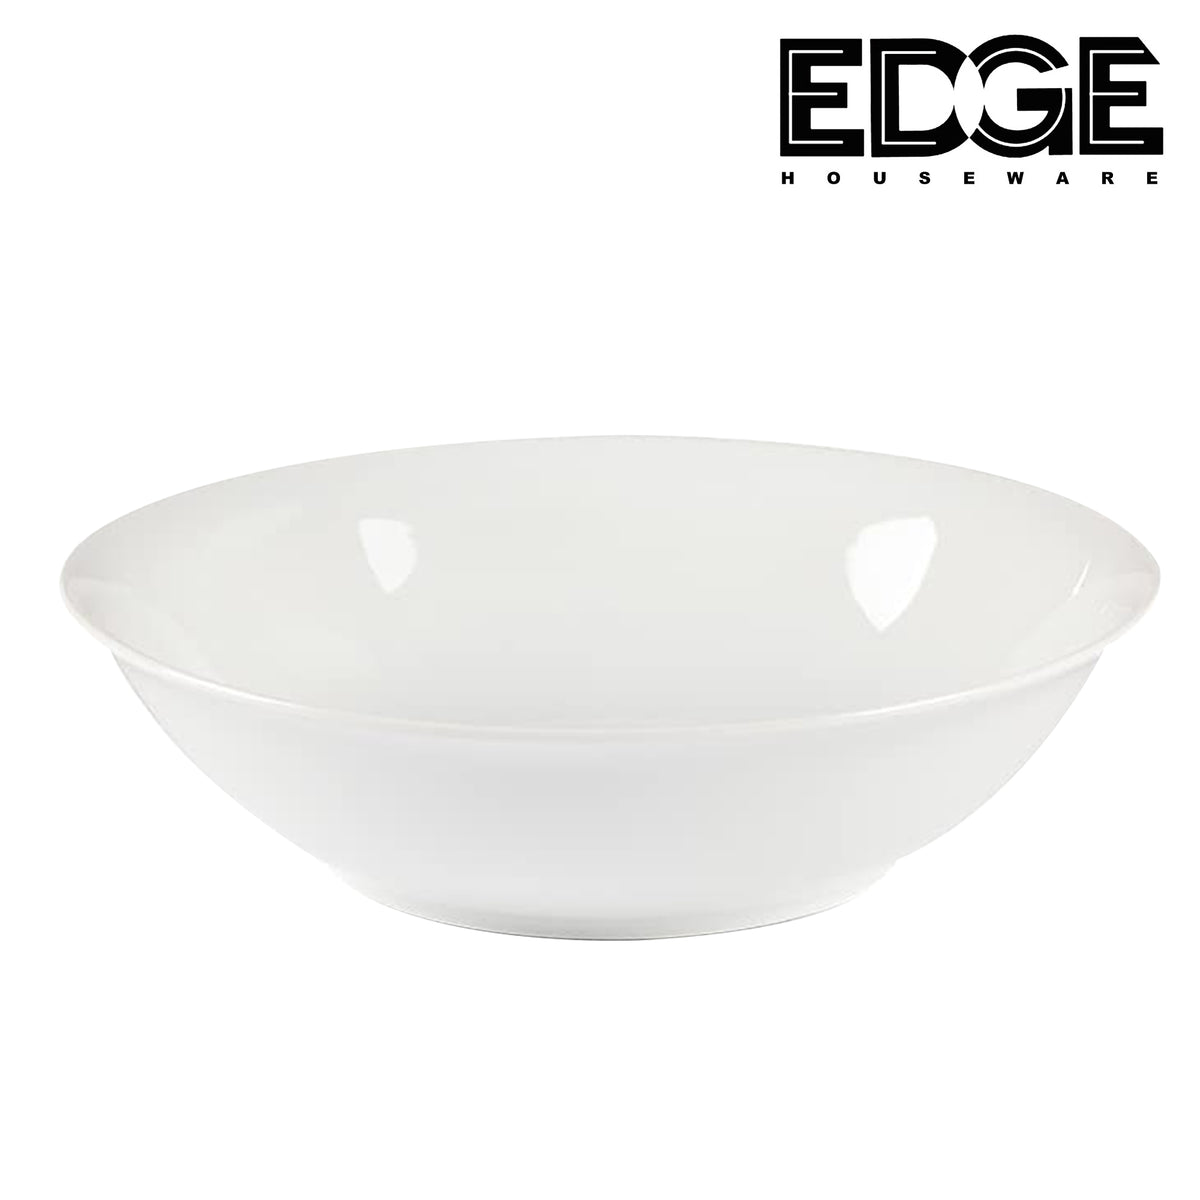 Edge Ceramic Soup Bowl set of 6 White Bowls – Rampage City